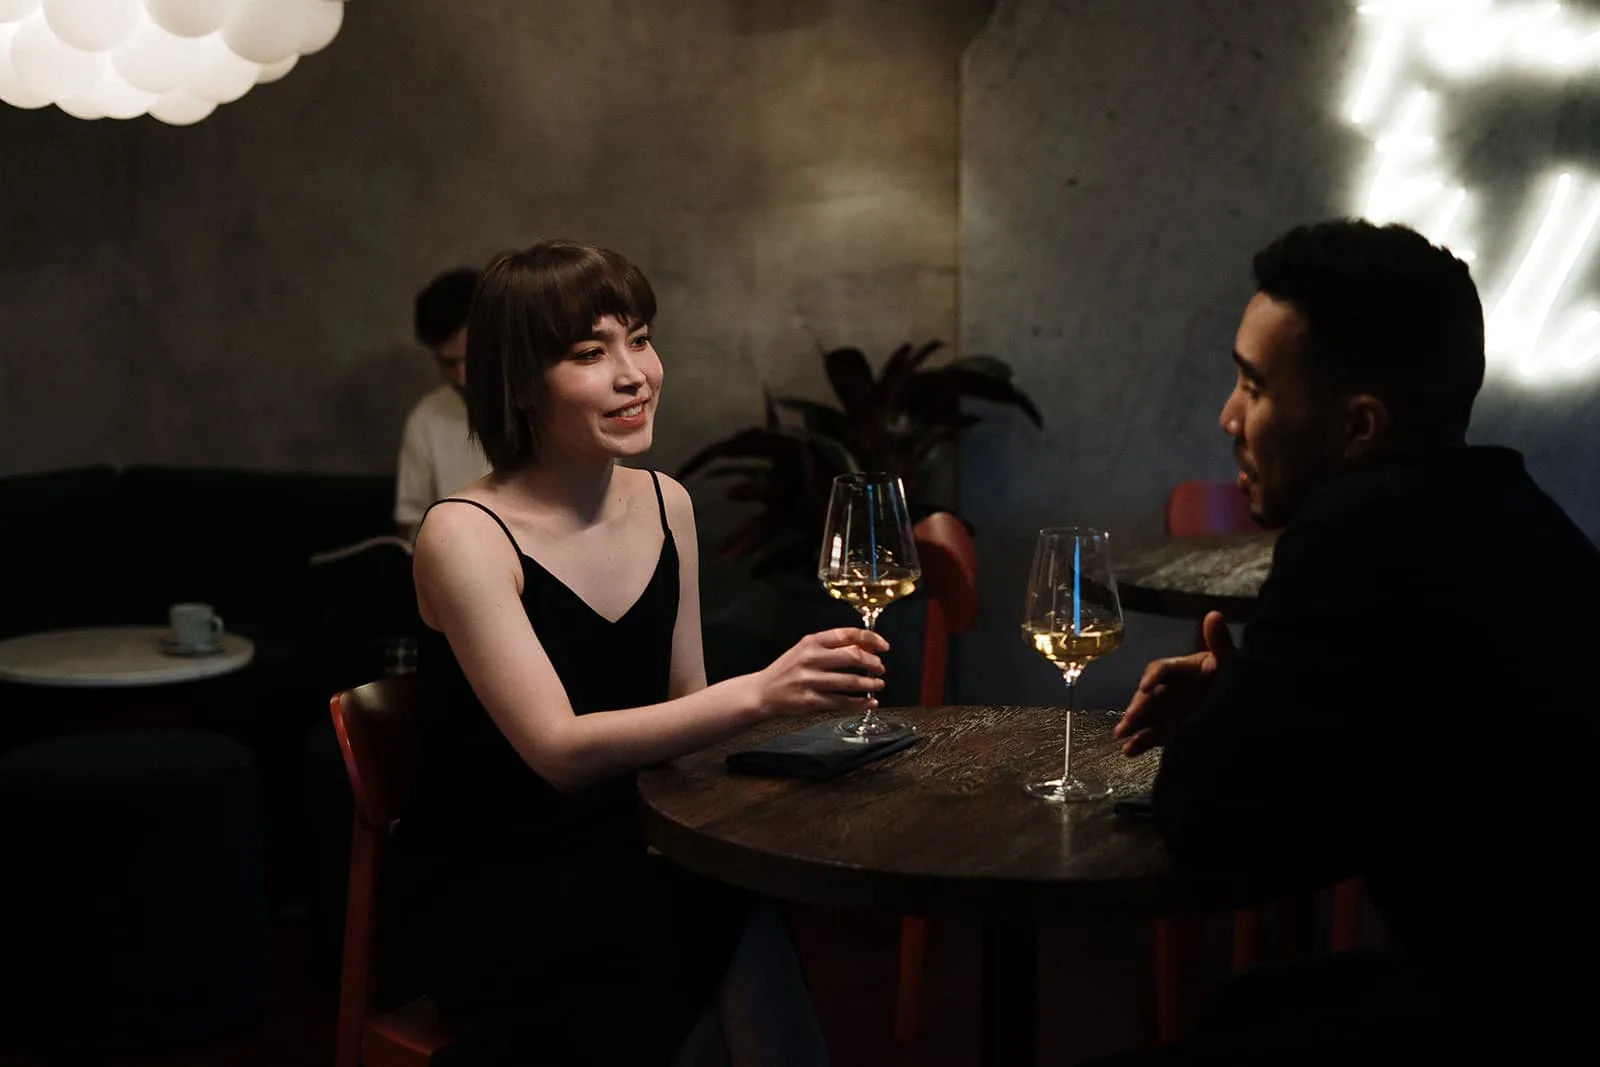 Ein Mann spricht mit einer Frau in einem Restaurant, während er zusammen Wein trinkt